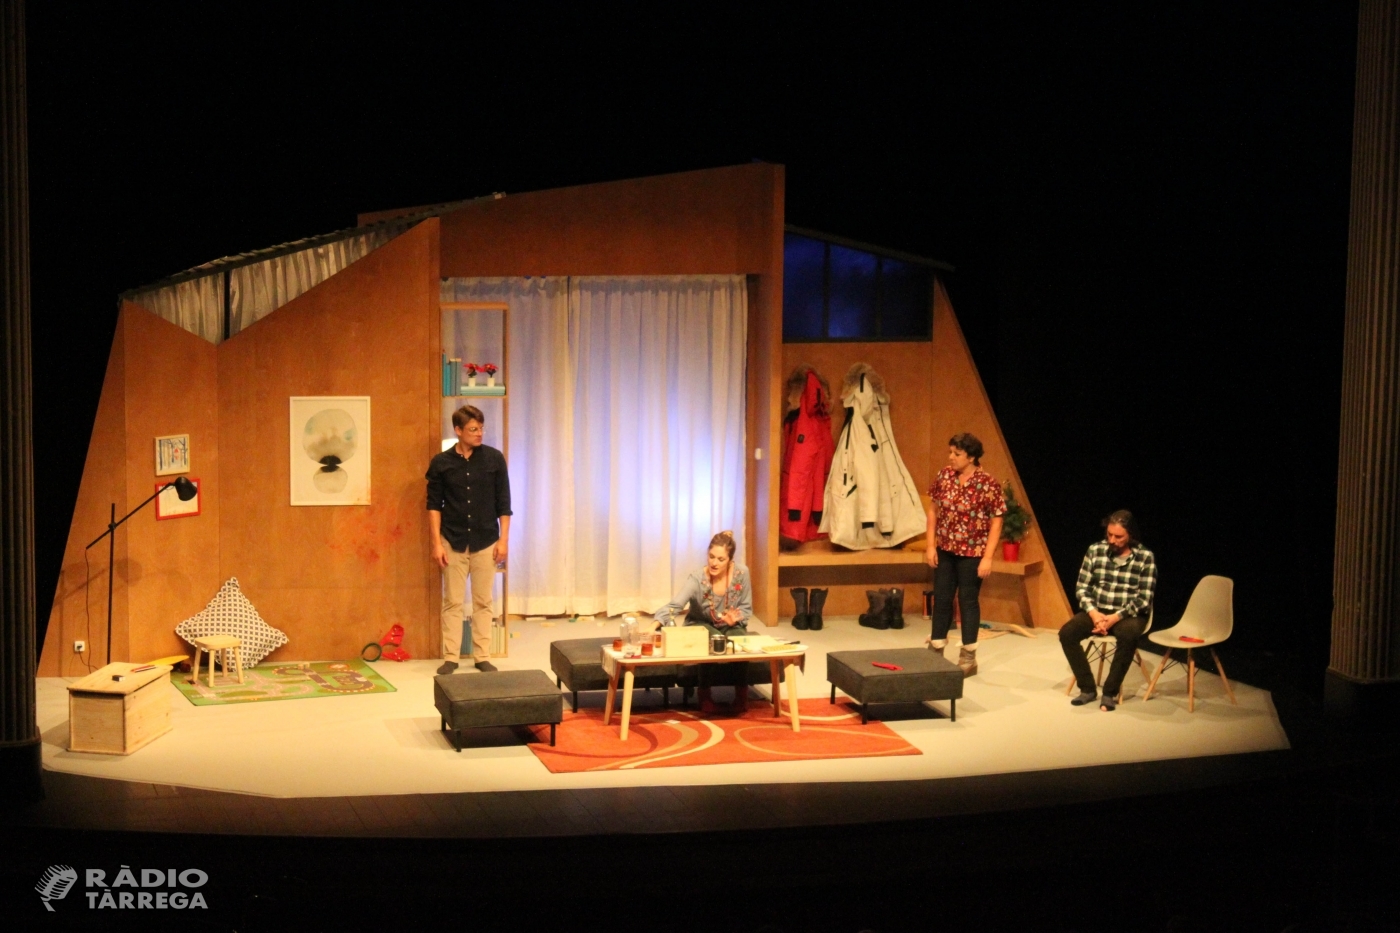 La 25a Temporada de Teatre de Tàrrega alça el teló amb la comèdia "Lapònia" i un augment d'espectadors abonats